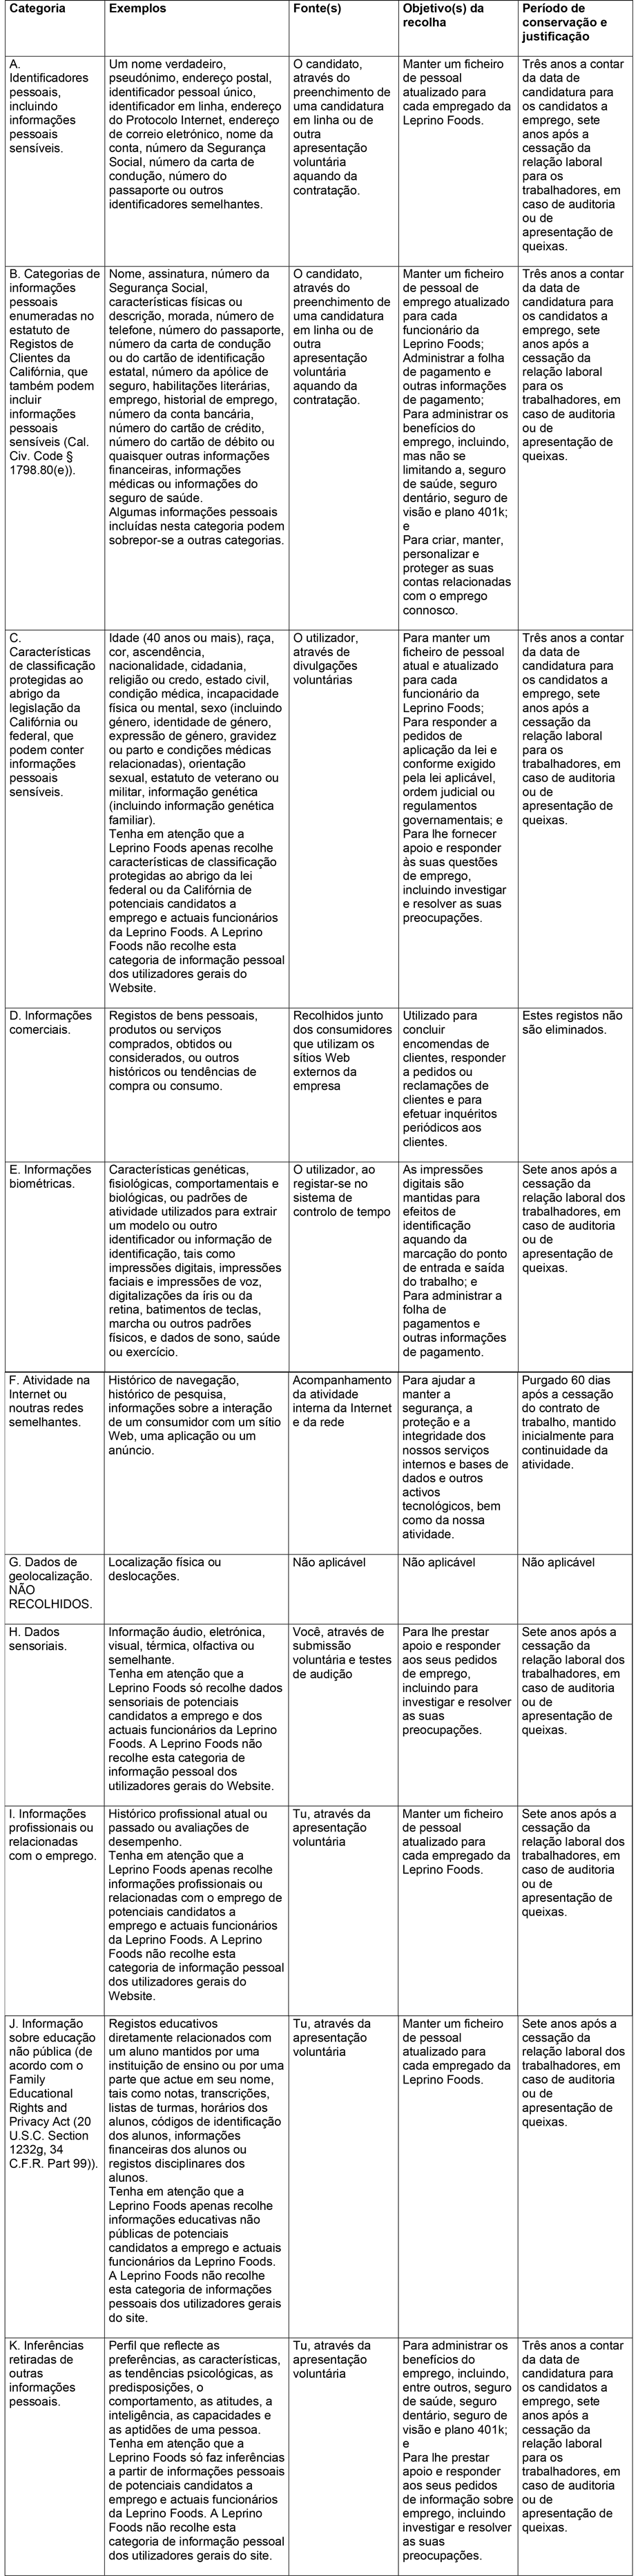 Tabela legal com categorias e exemplos de potenciais dados recolhidos.